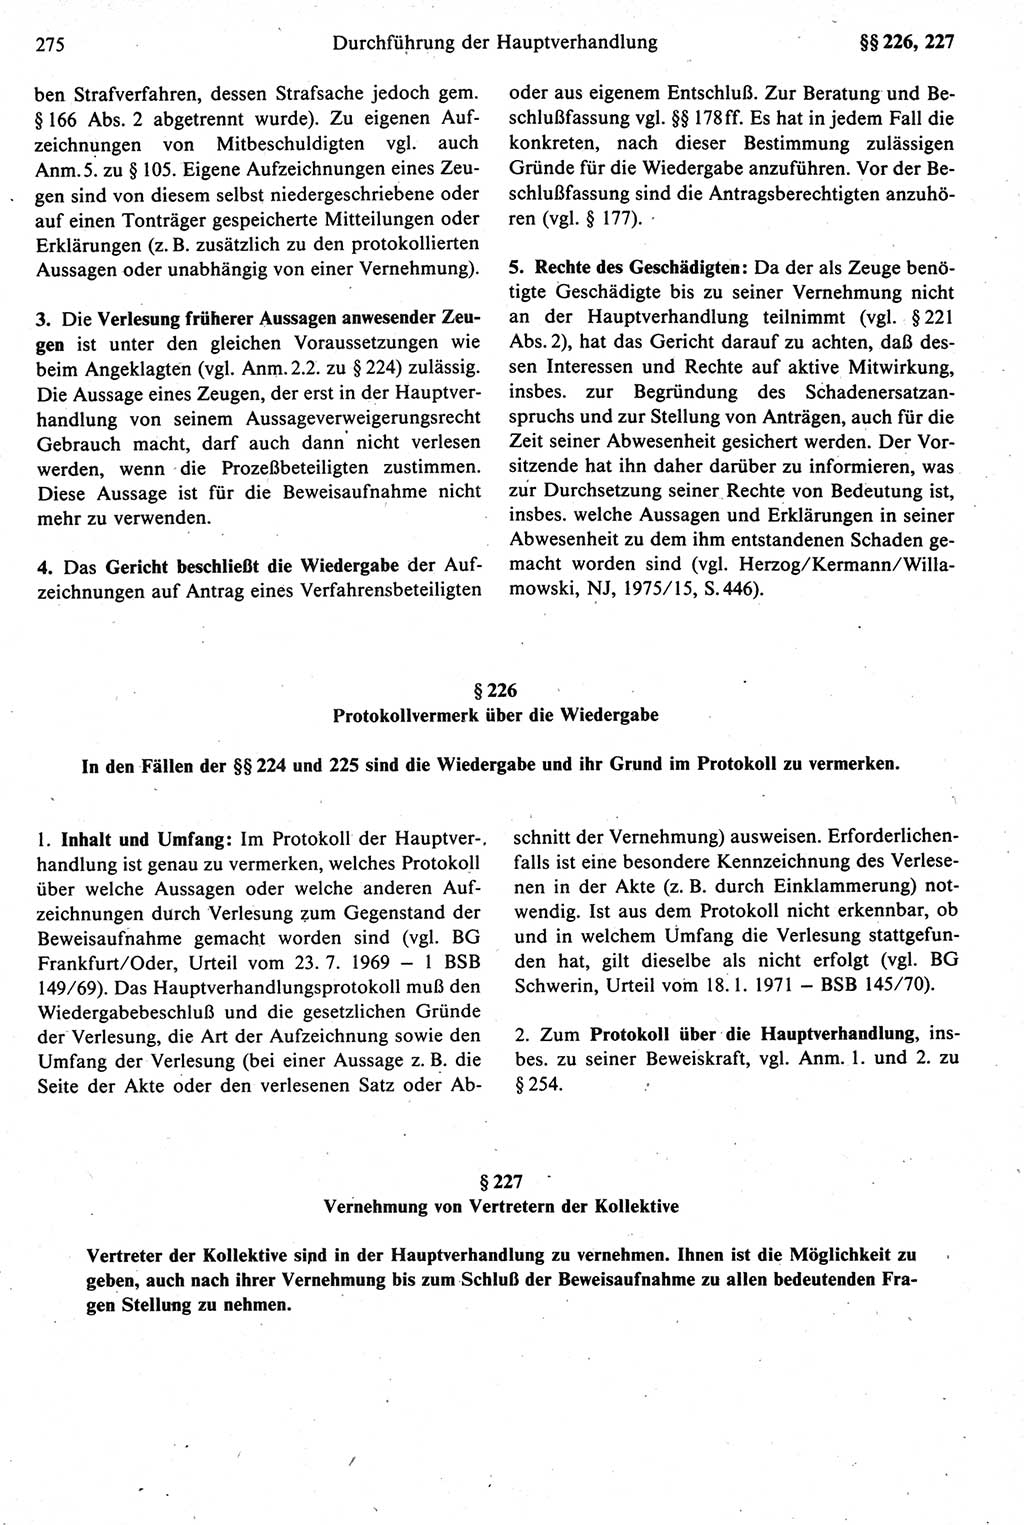 Strafprozeßrecht der DDR [Deutsche Demokratische Republik], Kommentar zur Strafprozeßordnung (StPO) 1987, Seite 275 (Strafprozeßr. DDR Komm. StPO 1987, S. 275)